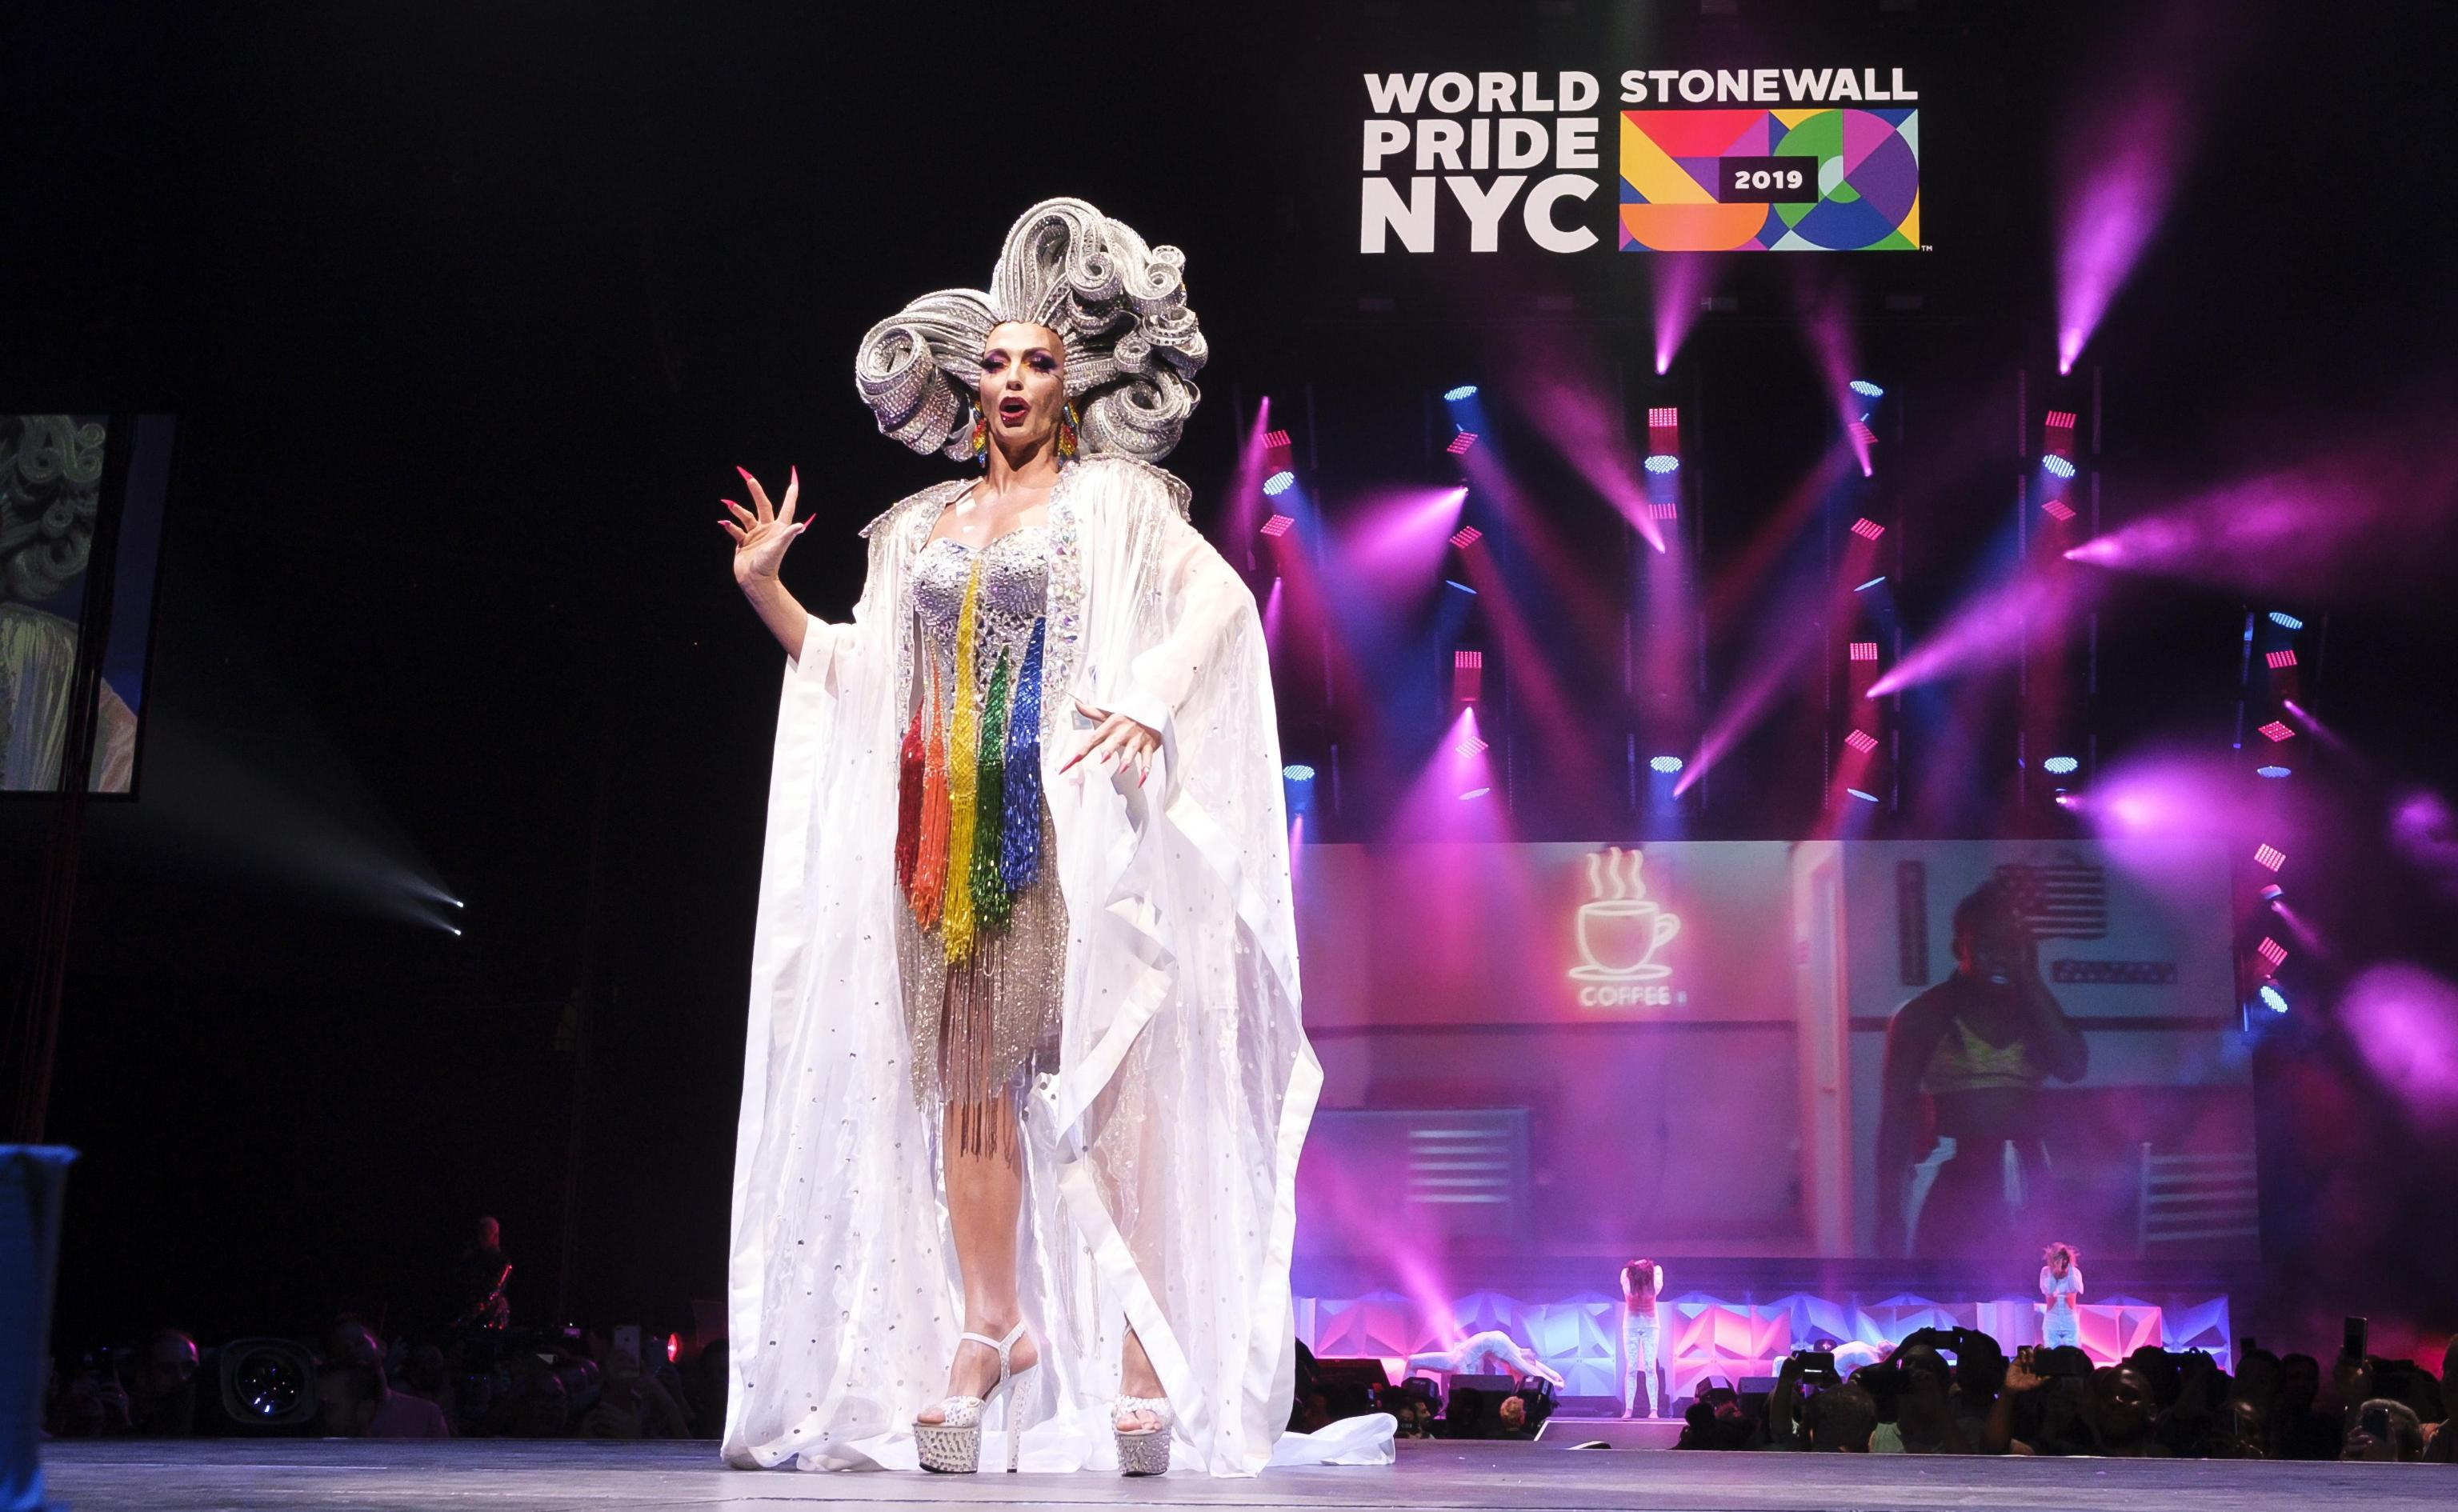 Una drag queen si esibisce sul palco del Barclays Center di Brooklyn per i 50 anni dei moti di Stonewall (Foto di Epa/Justin Lane)